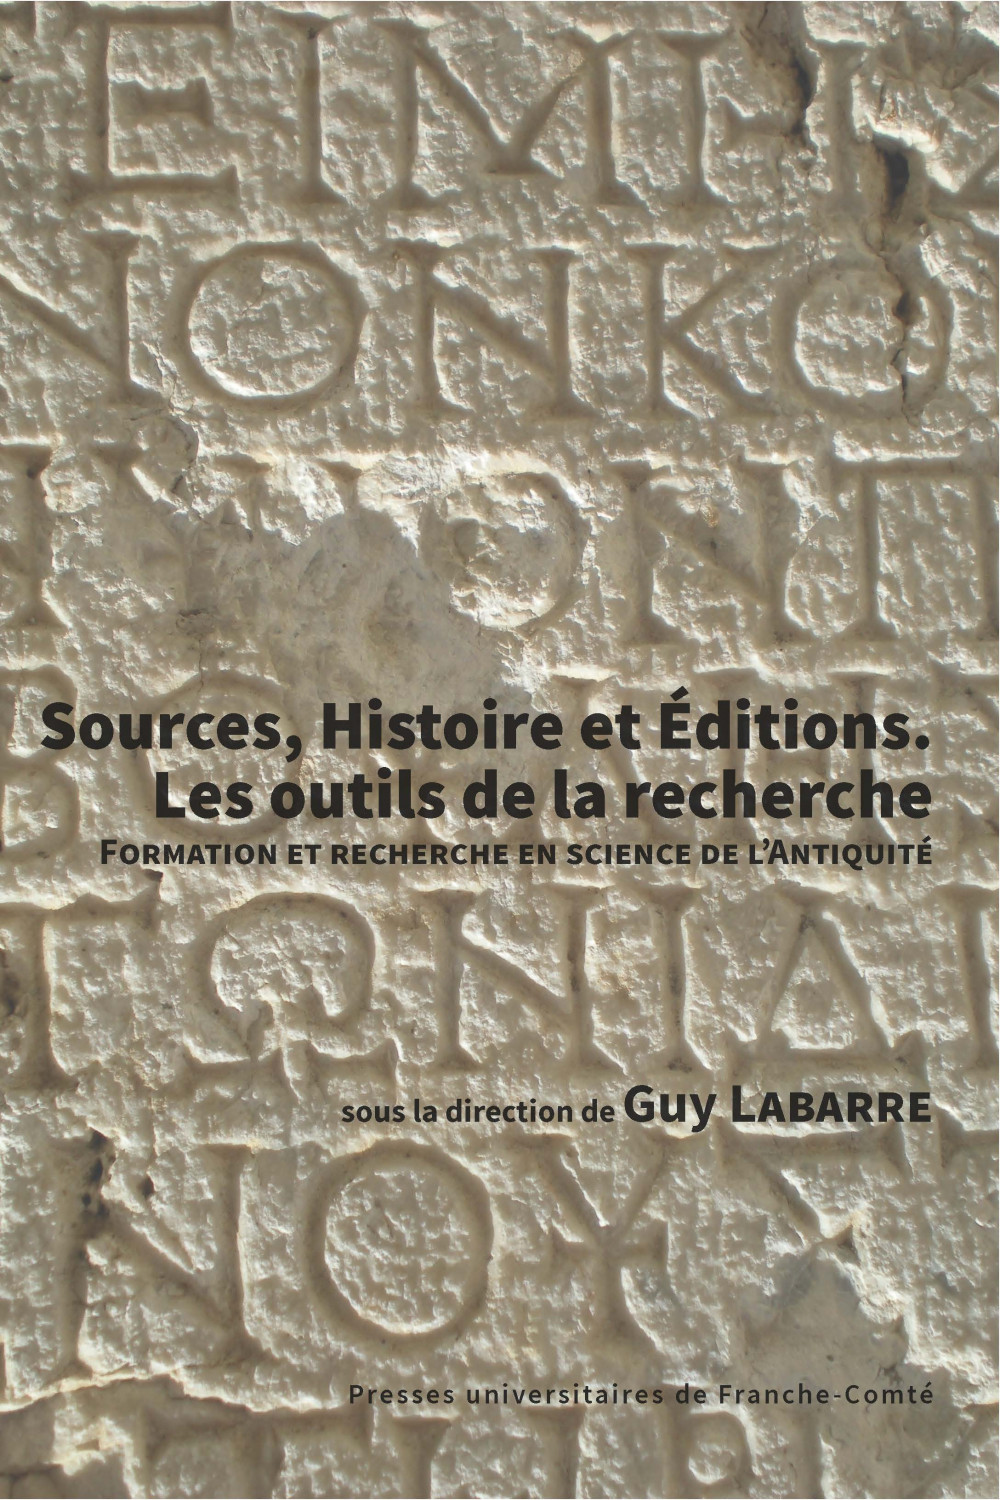 couverture de l'ouvrage Sources, histoire et éditions de Guy Labarre